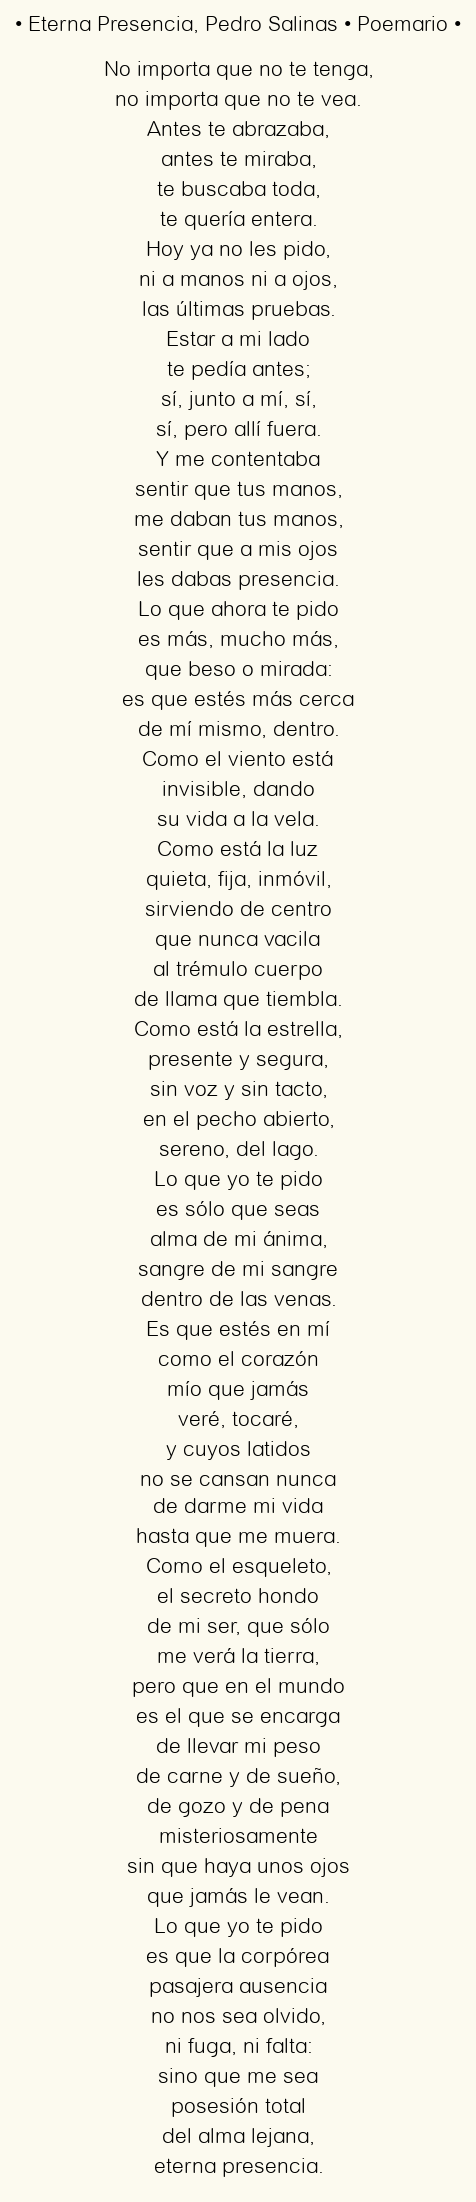 Imagen con el poema Eterna Presencia, por Pedro Salinas